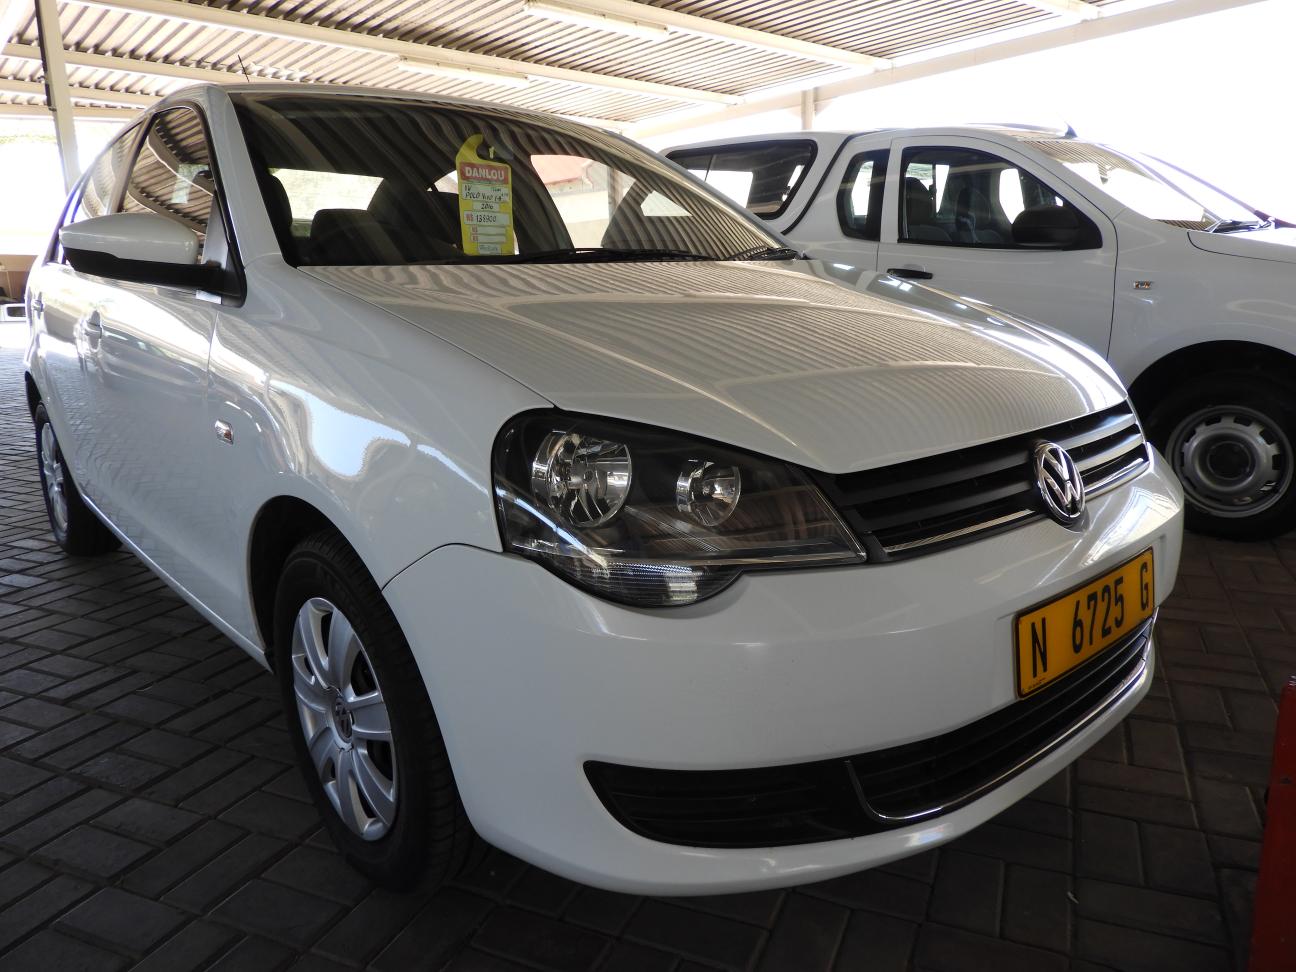  Used Volkswagen Polo Vivo in Namibia